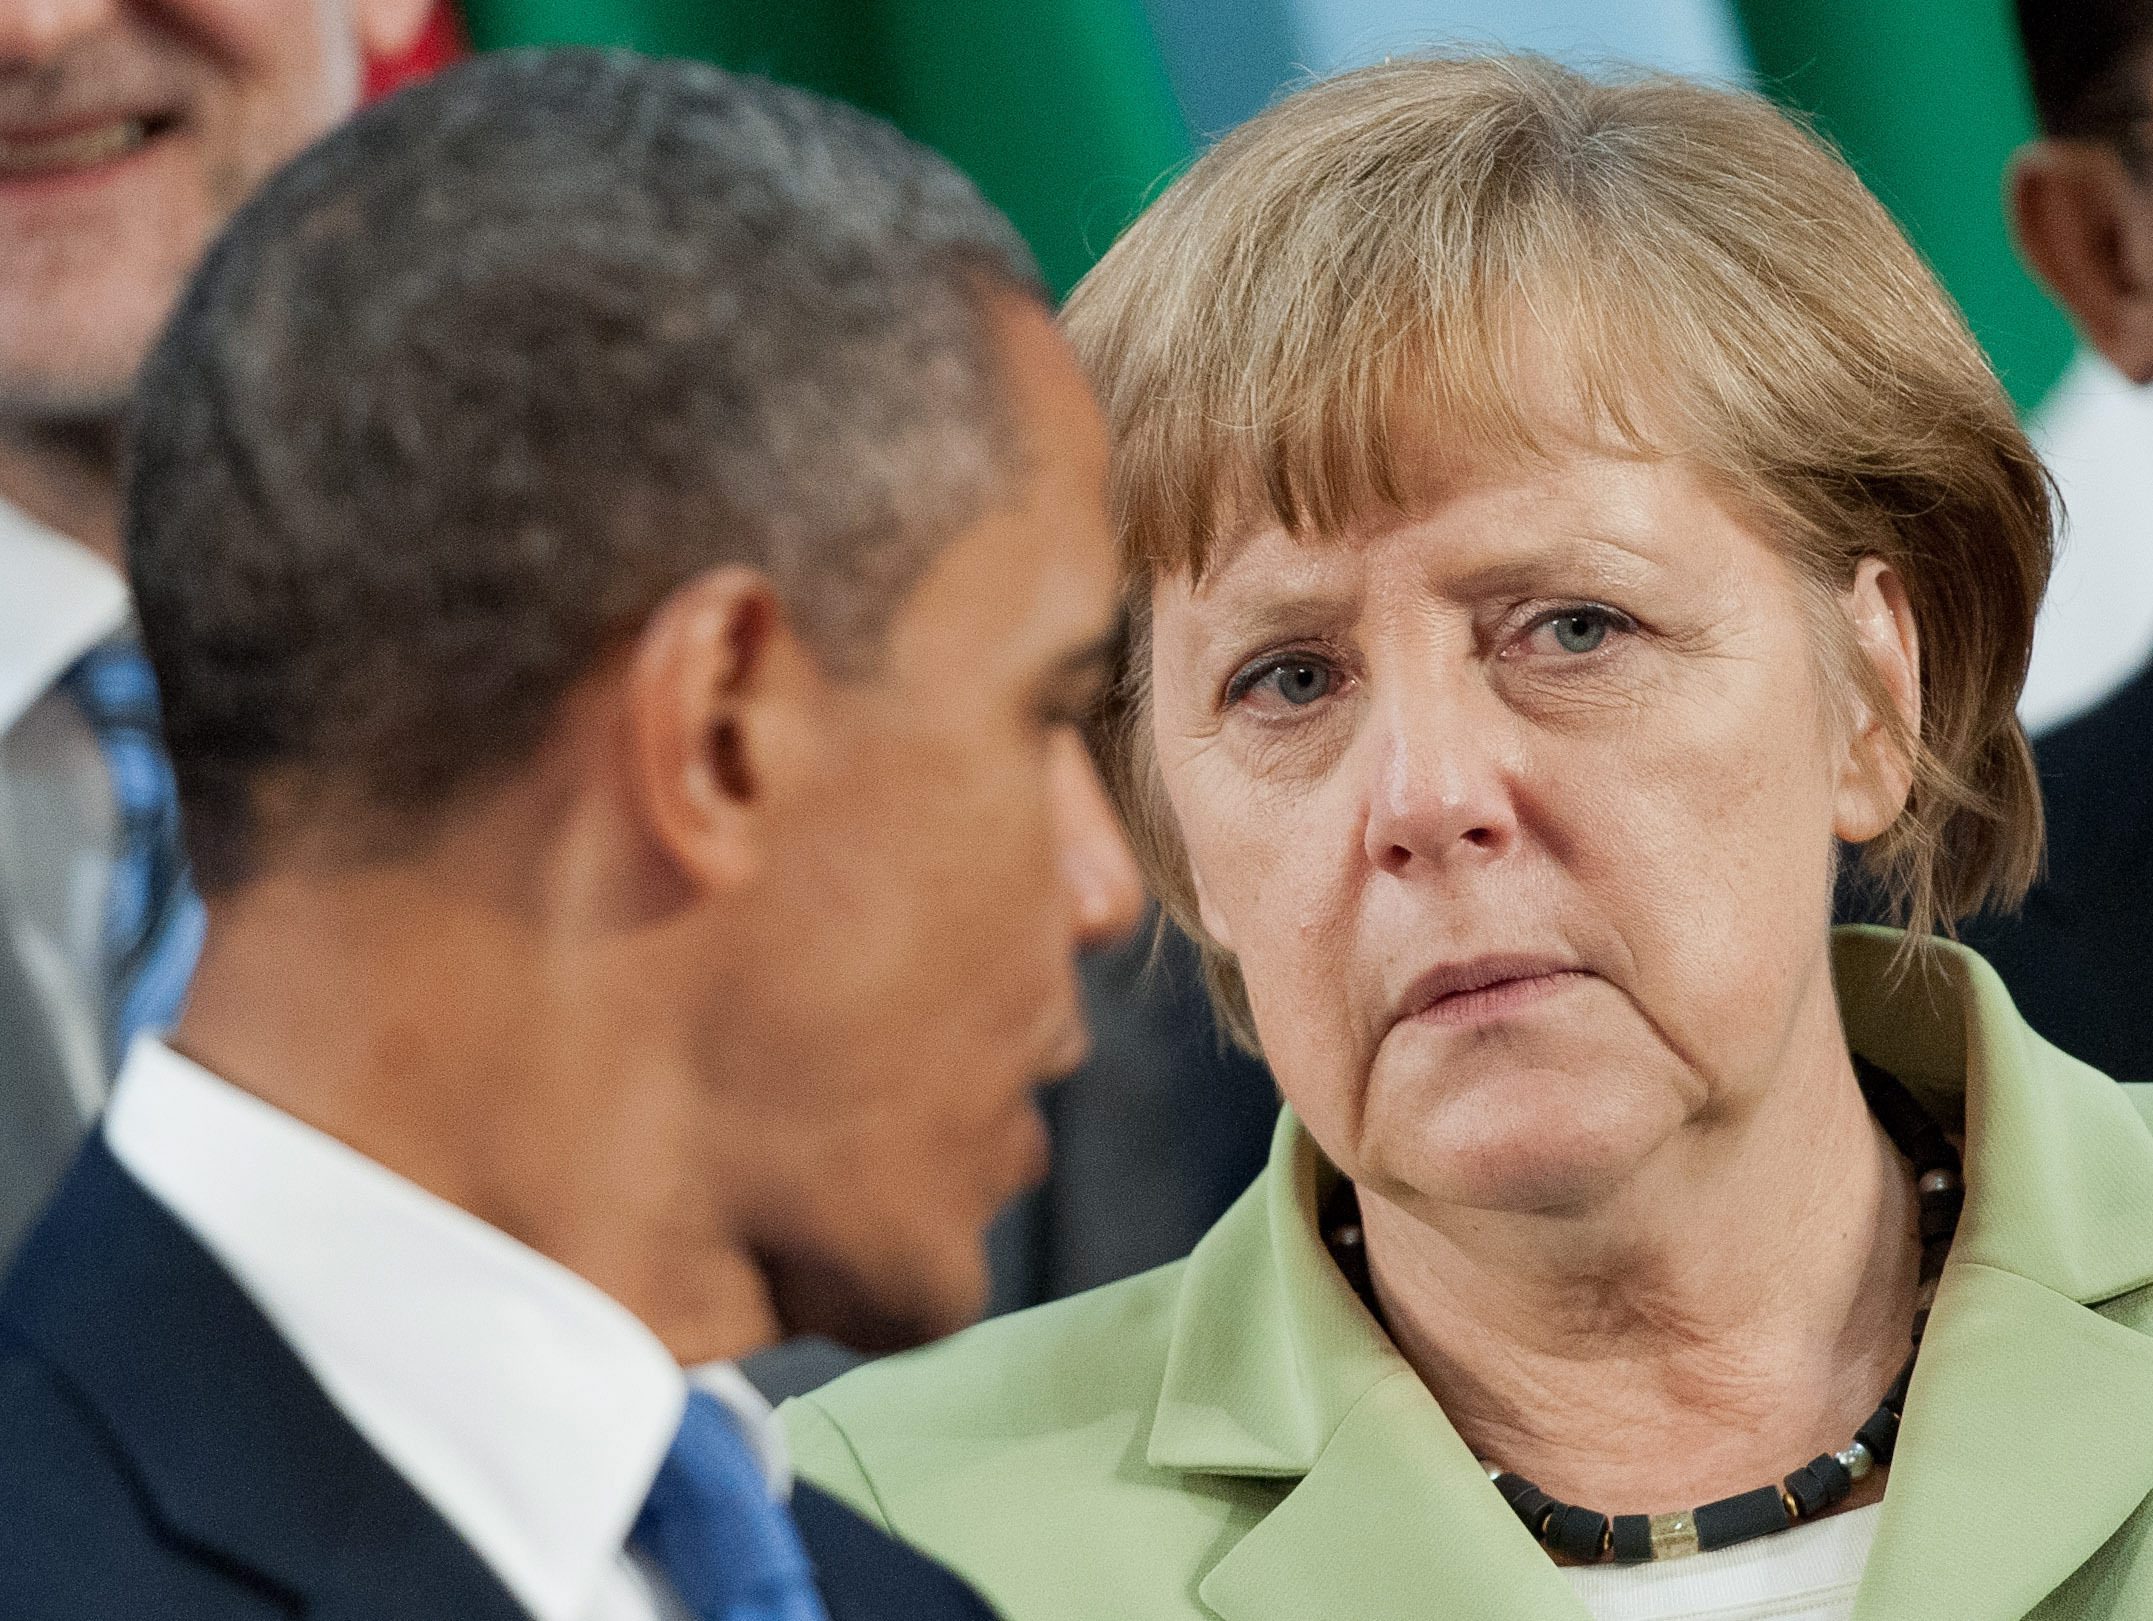 Обама и Меркел се очаква да заявят, че повече няма да допускат милиарди от потенциални данъчни приходи да не влизат в хазните